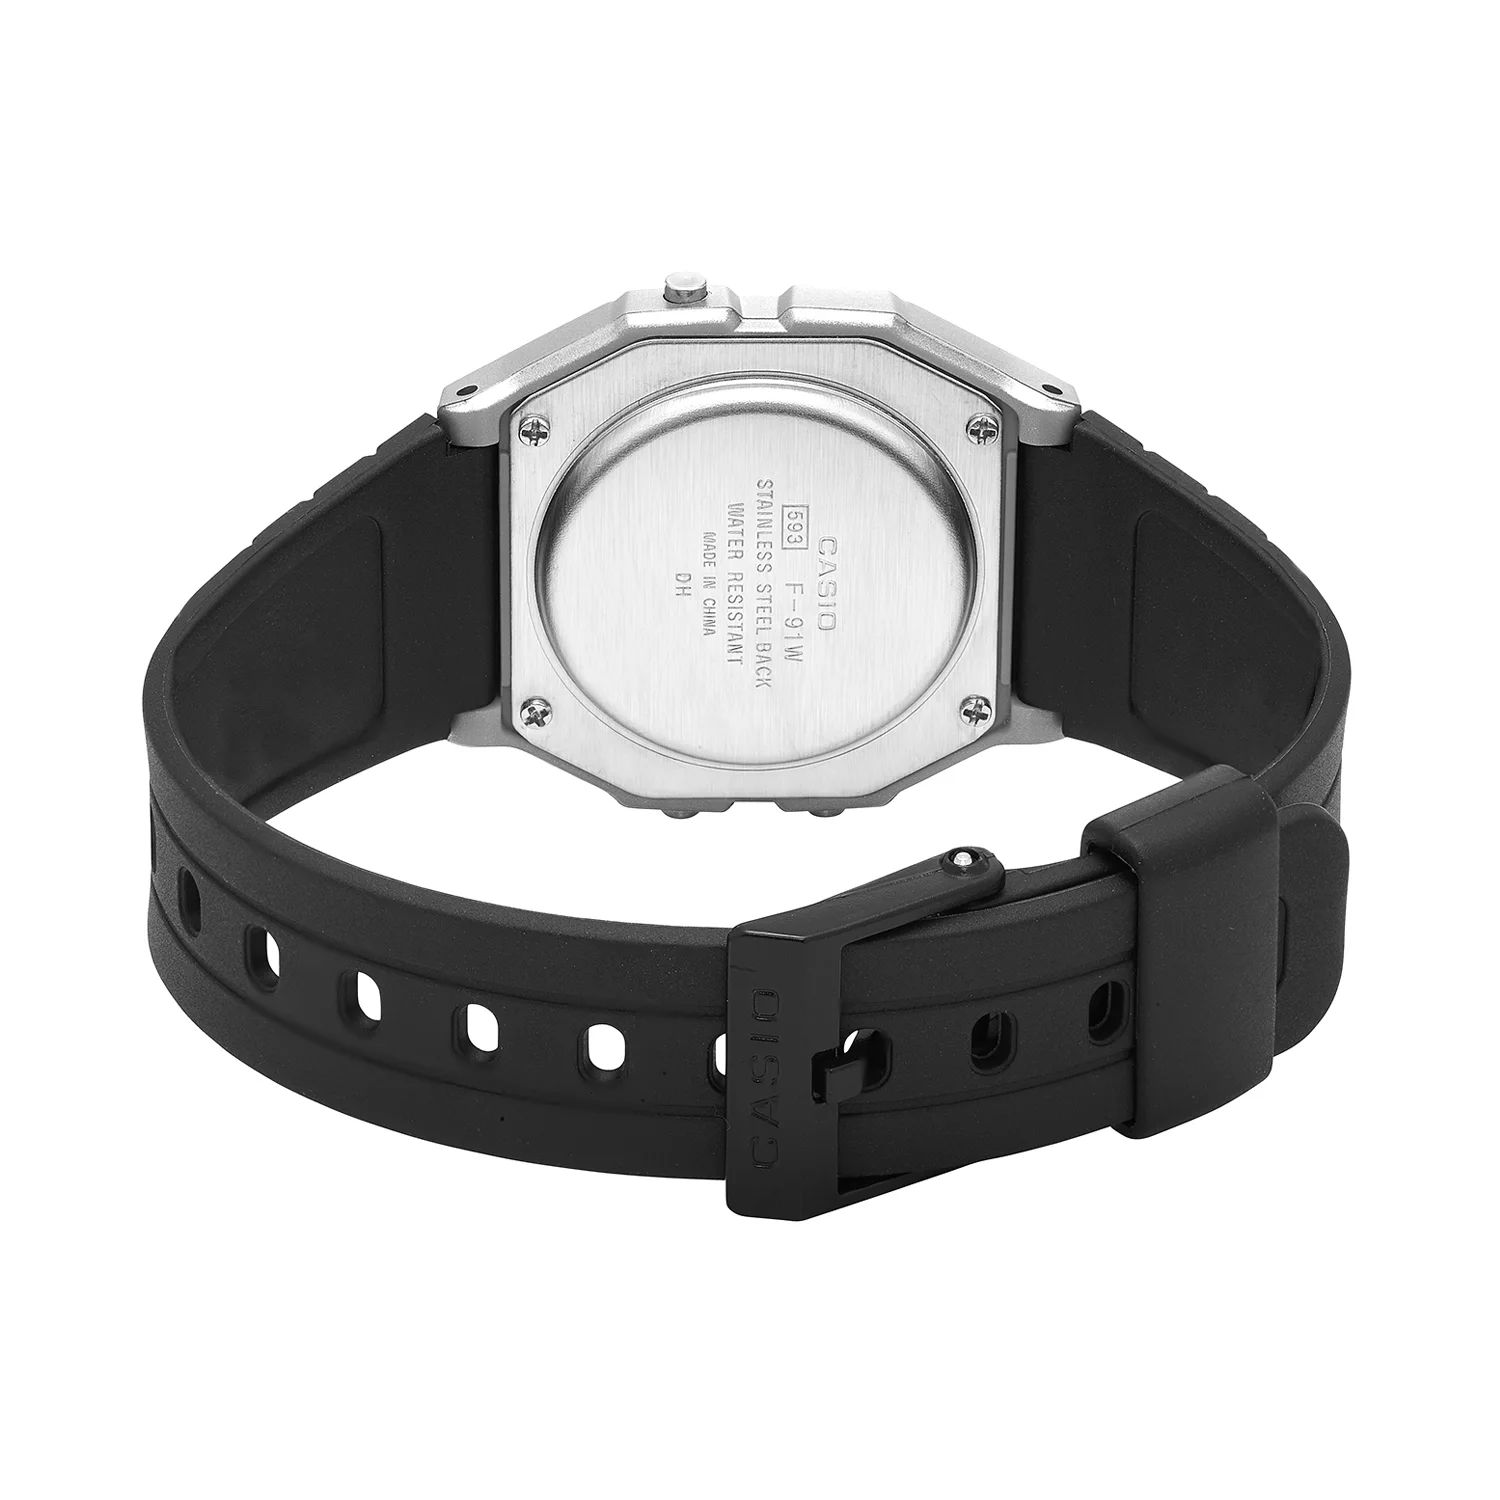 Мужские классические цифровые часы с хронографом Casio цена и фото